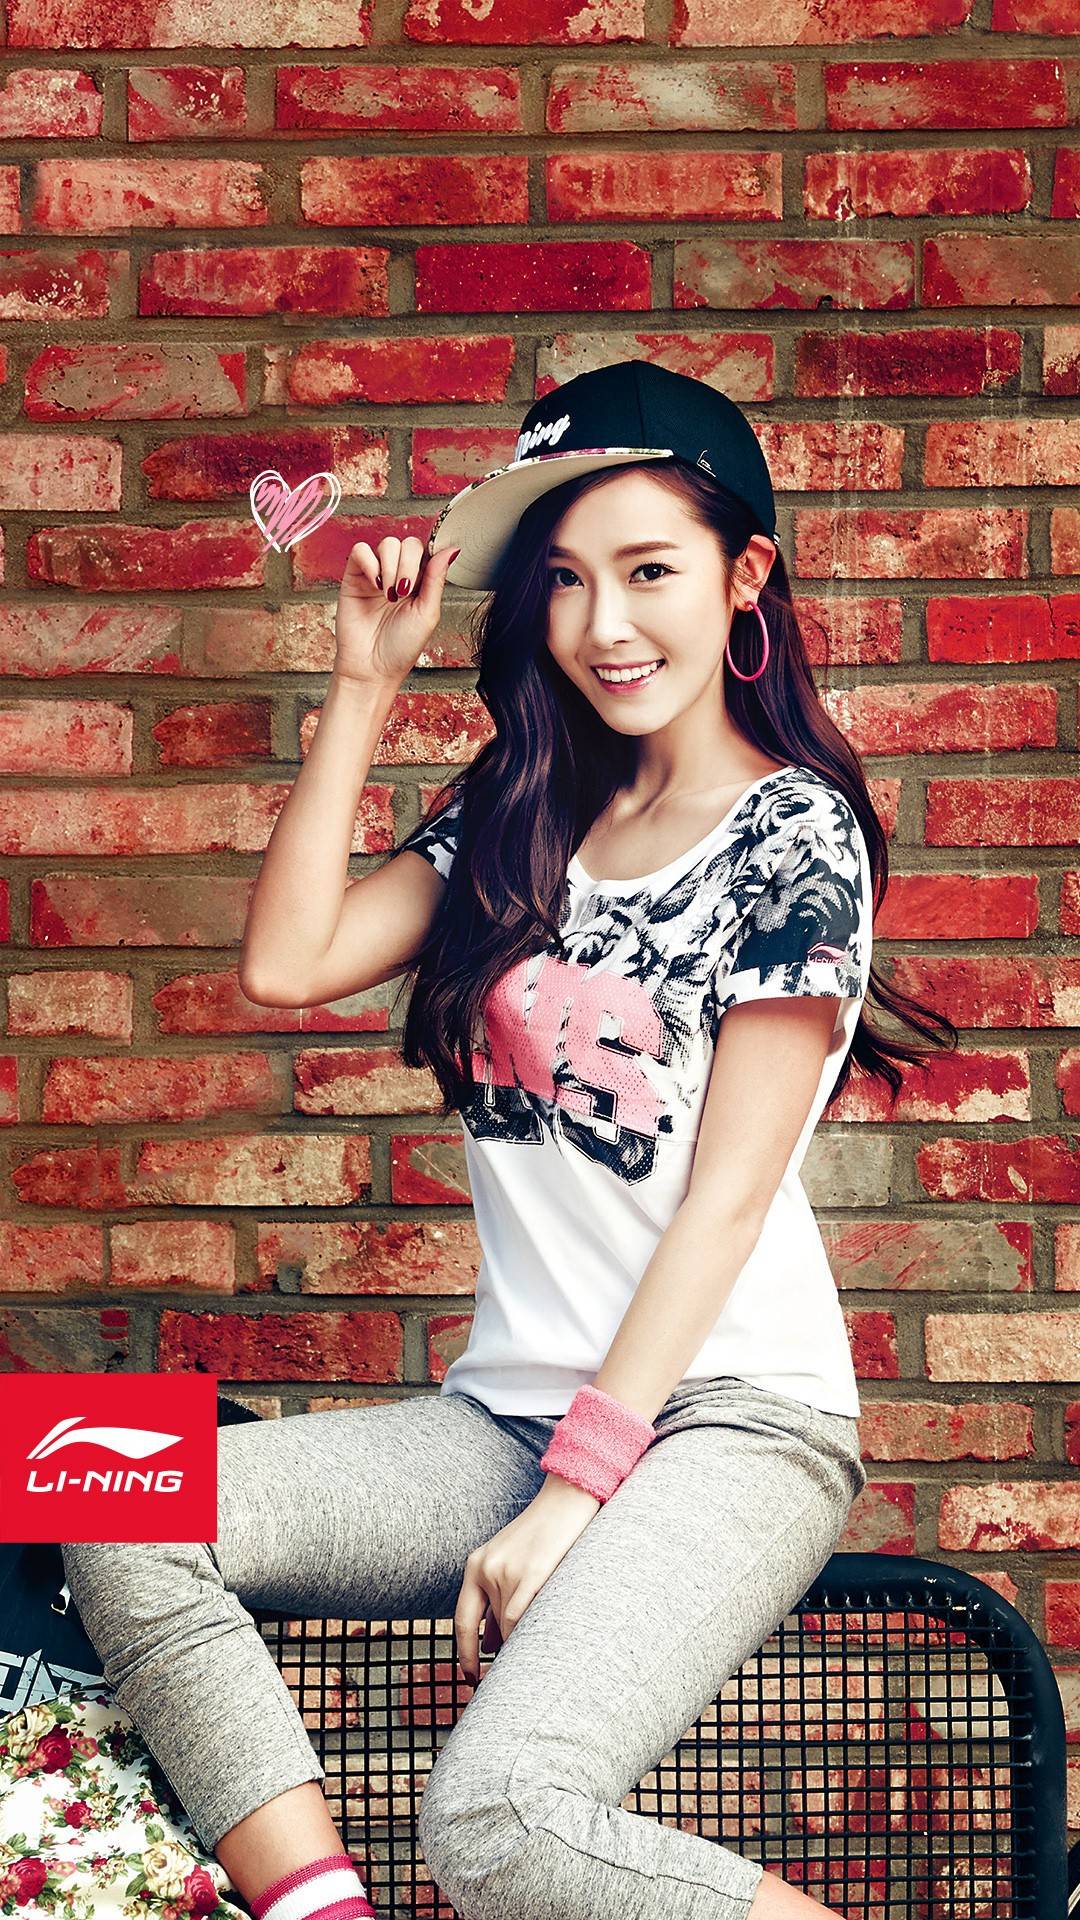 [OTHER][28-06-2014]Jessica trở thành người mẫu mới cho thương hiệu thời trang thể thao Li Ning - Page 5 7ba84f93gw1ew6x95s5sdj20u01hcdt4